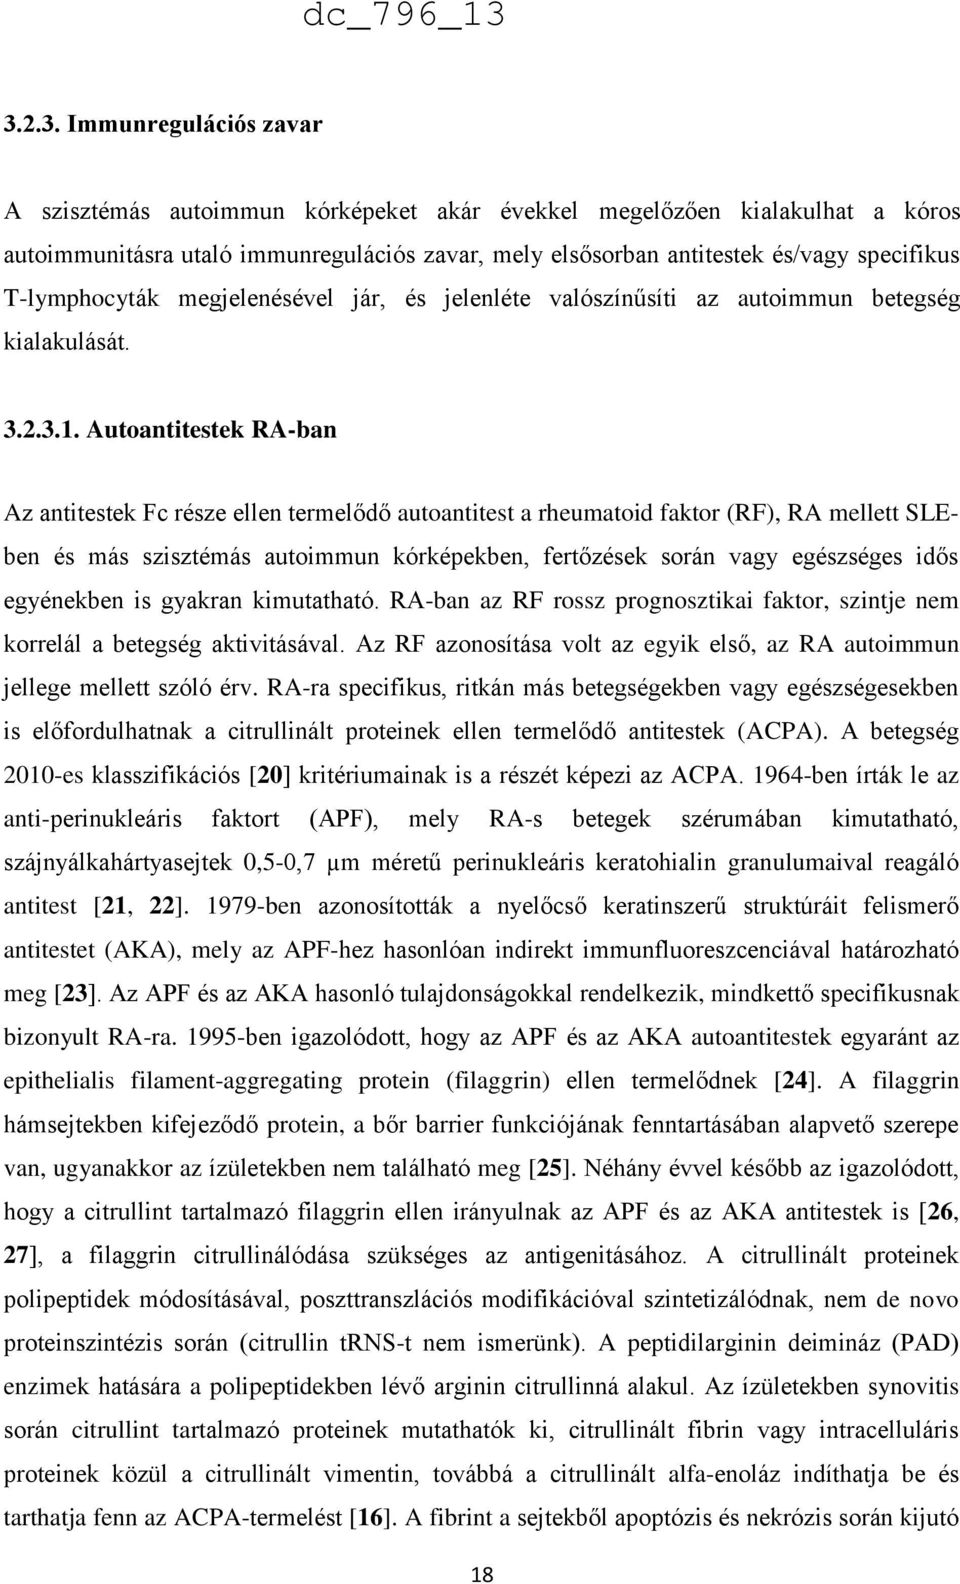 Autoantitestek RA-ban Az antitestek Fc része ellen termelődő autoantitest a rheumatoid faktor (RF), RA mellett SLEben és más szisztémás autoimmun kórképekben, fertőzések során vagy egészséges idős